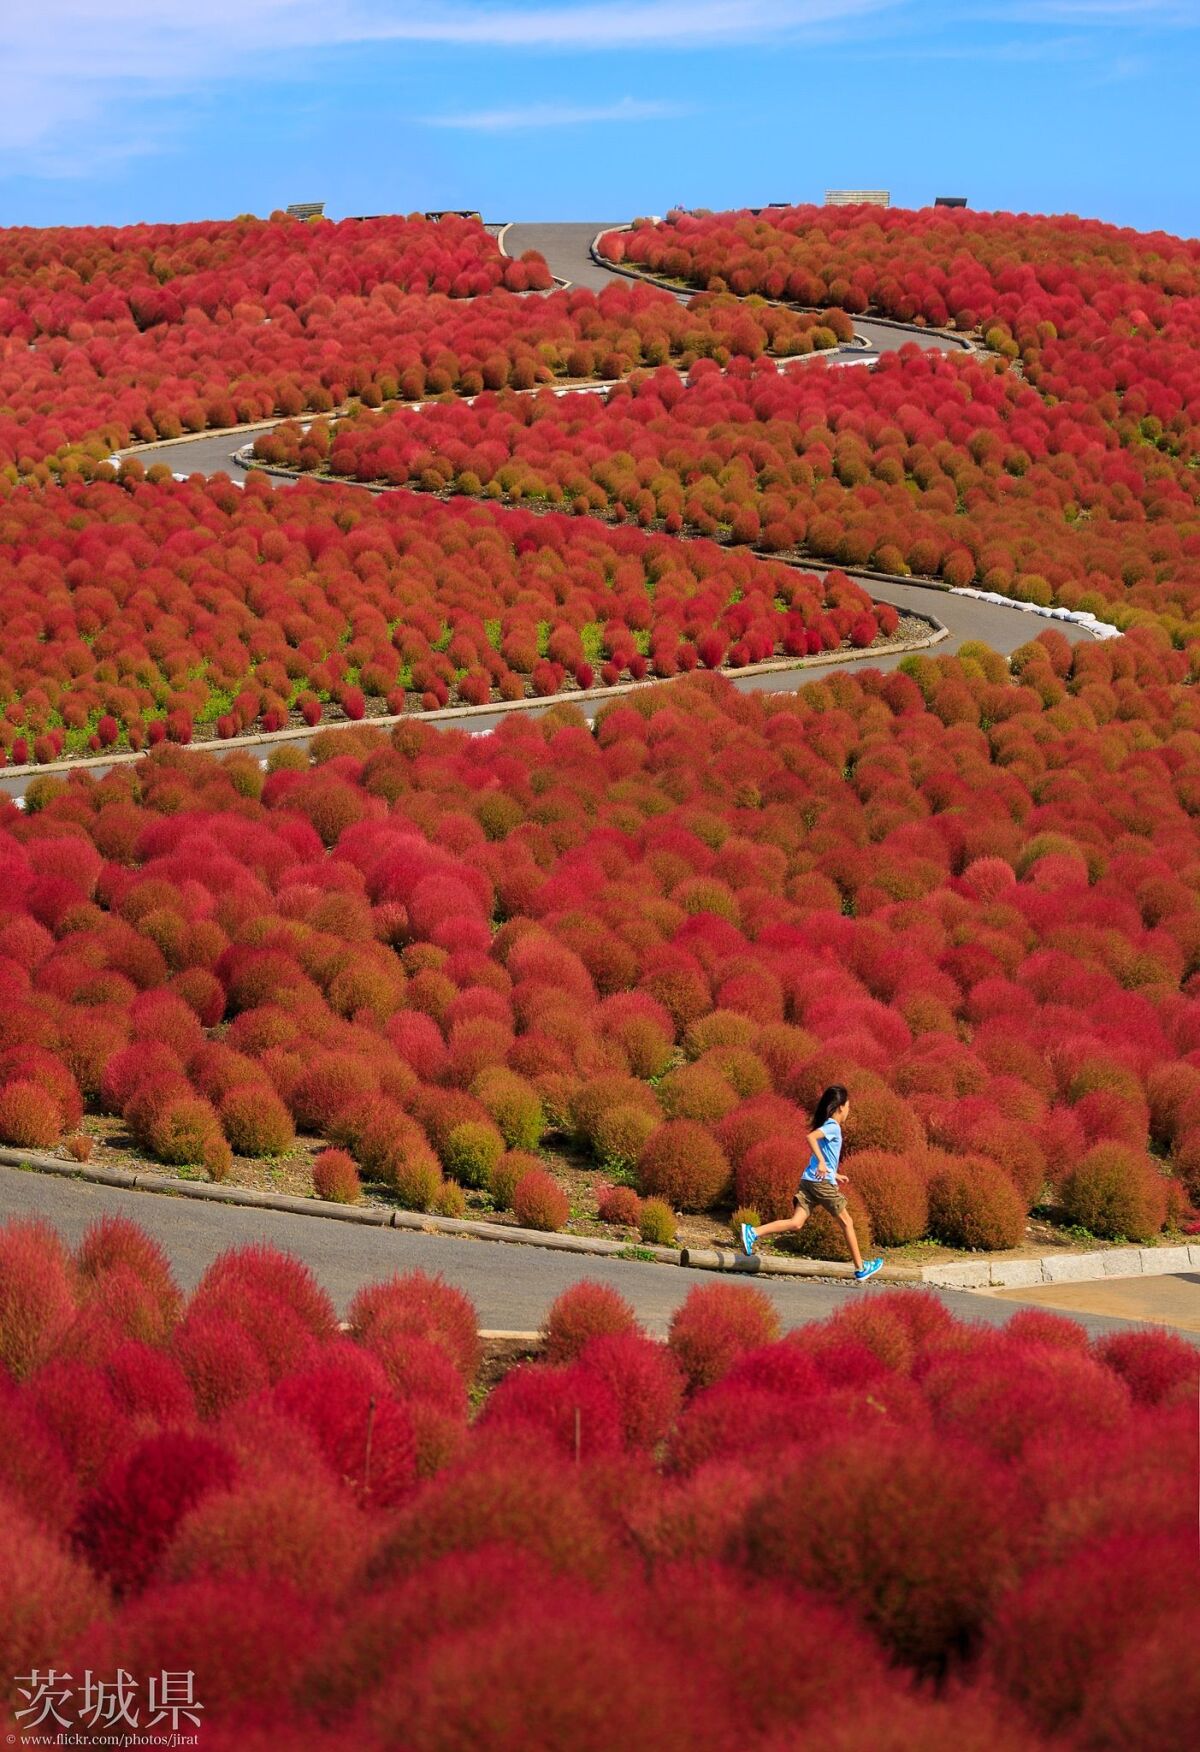 Mùa cỏ kochia nhuộm đỏ khắp Nhật Bản - 5